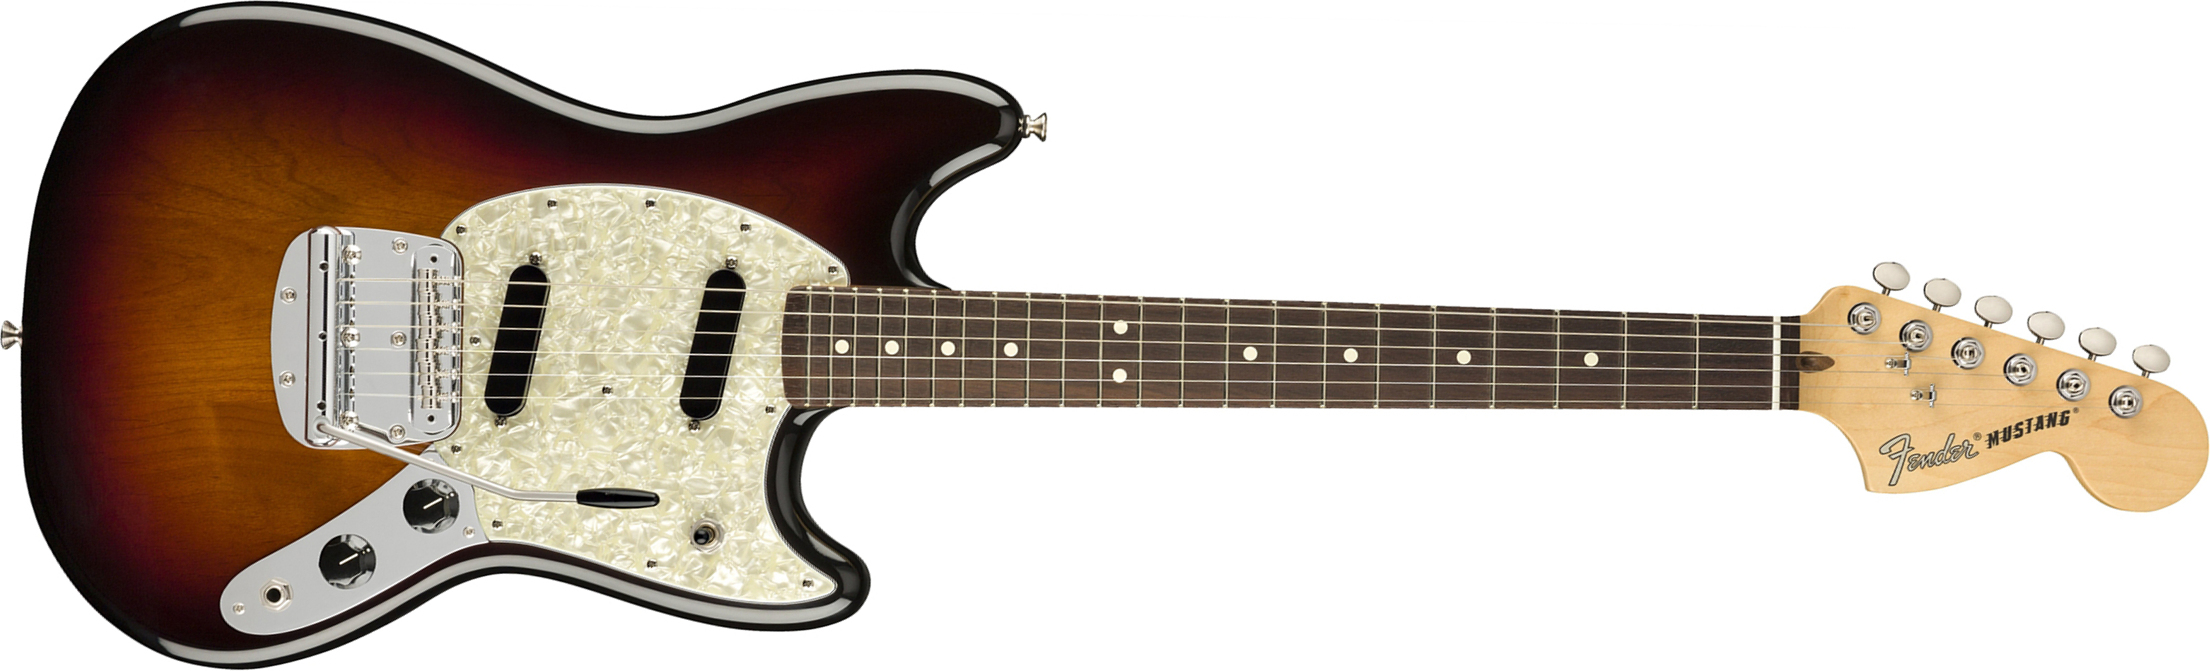 Fender Mustang American Performer Usa Ss Rw - 3-color Sunburst - Guitare Électrique Double Cut - Main picture